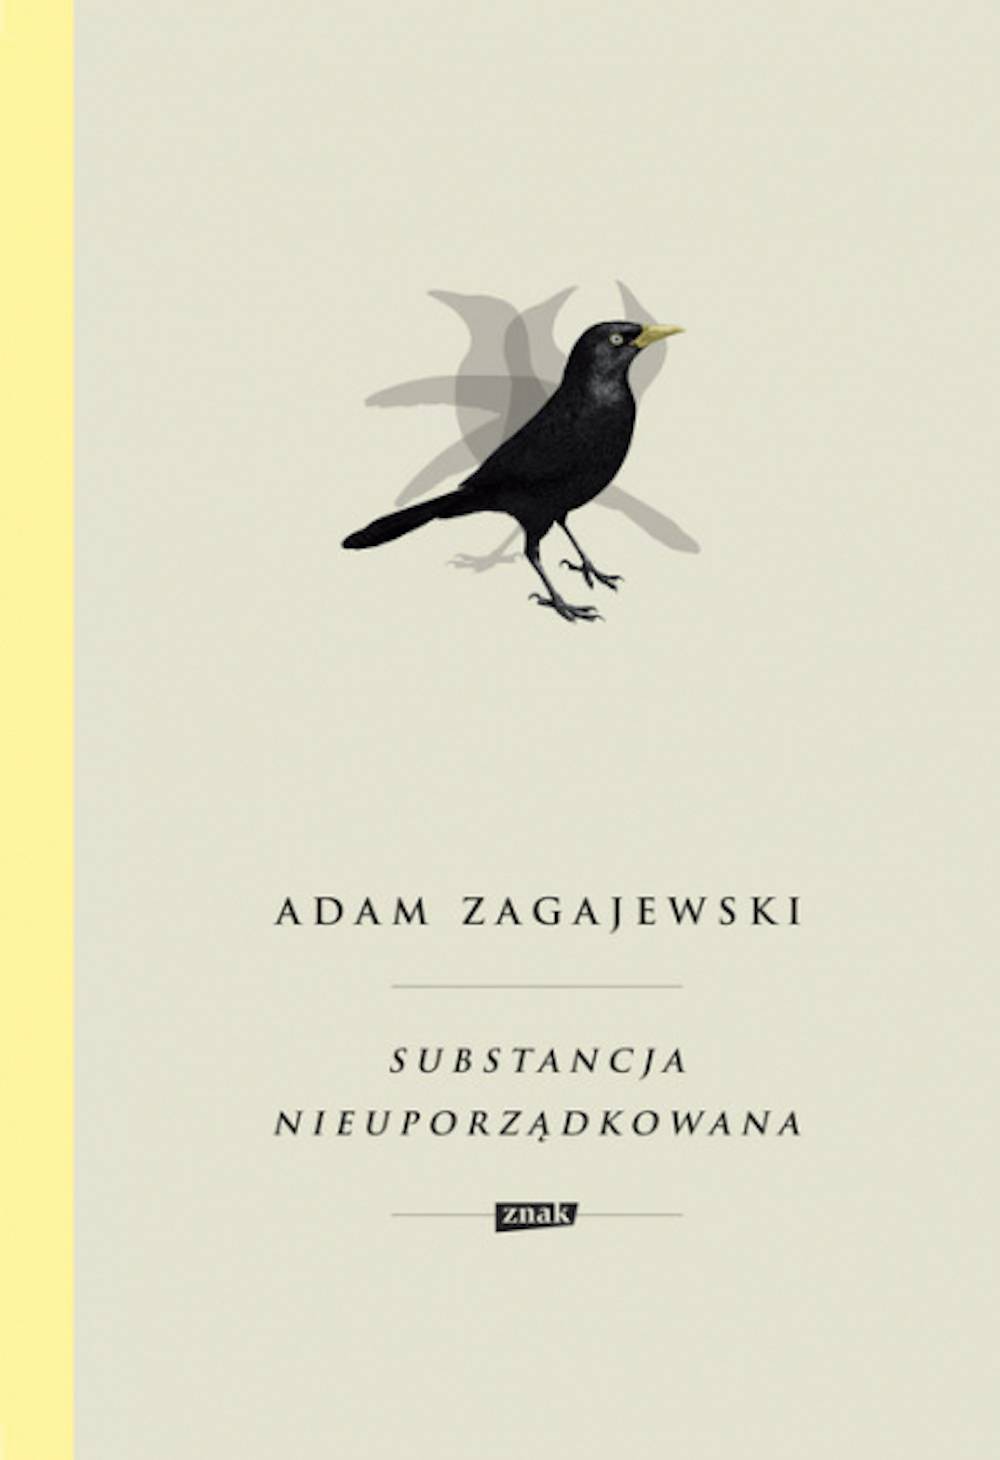 Adam Zagajewski, Substancja nieuporządkowana, Wydawnictwo Znak (Fot. materiały prasowe)